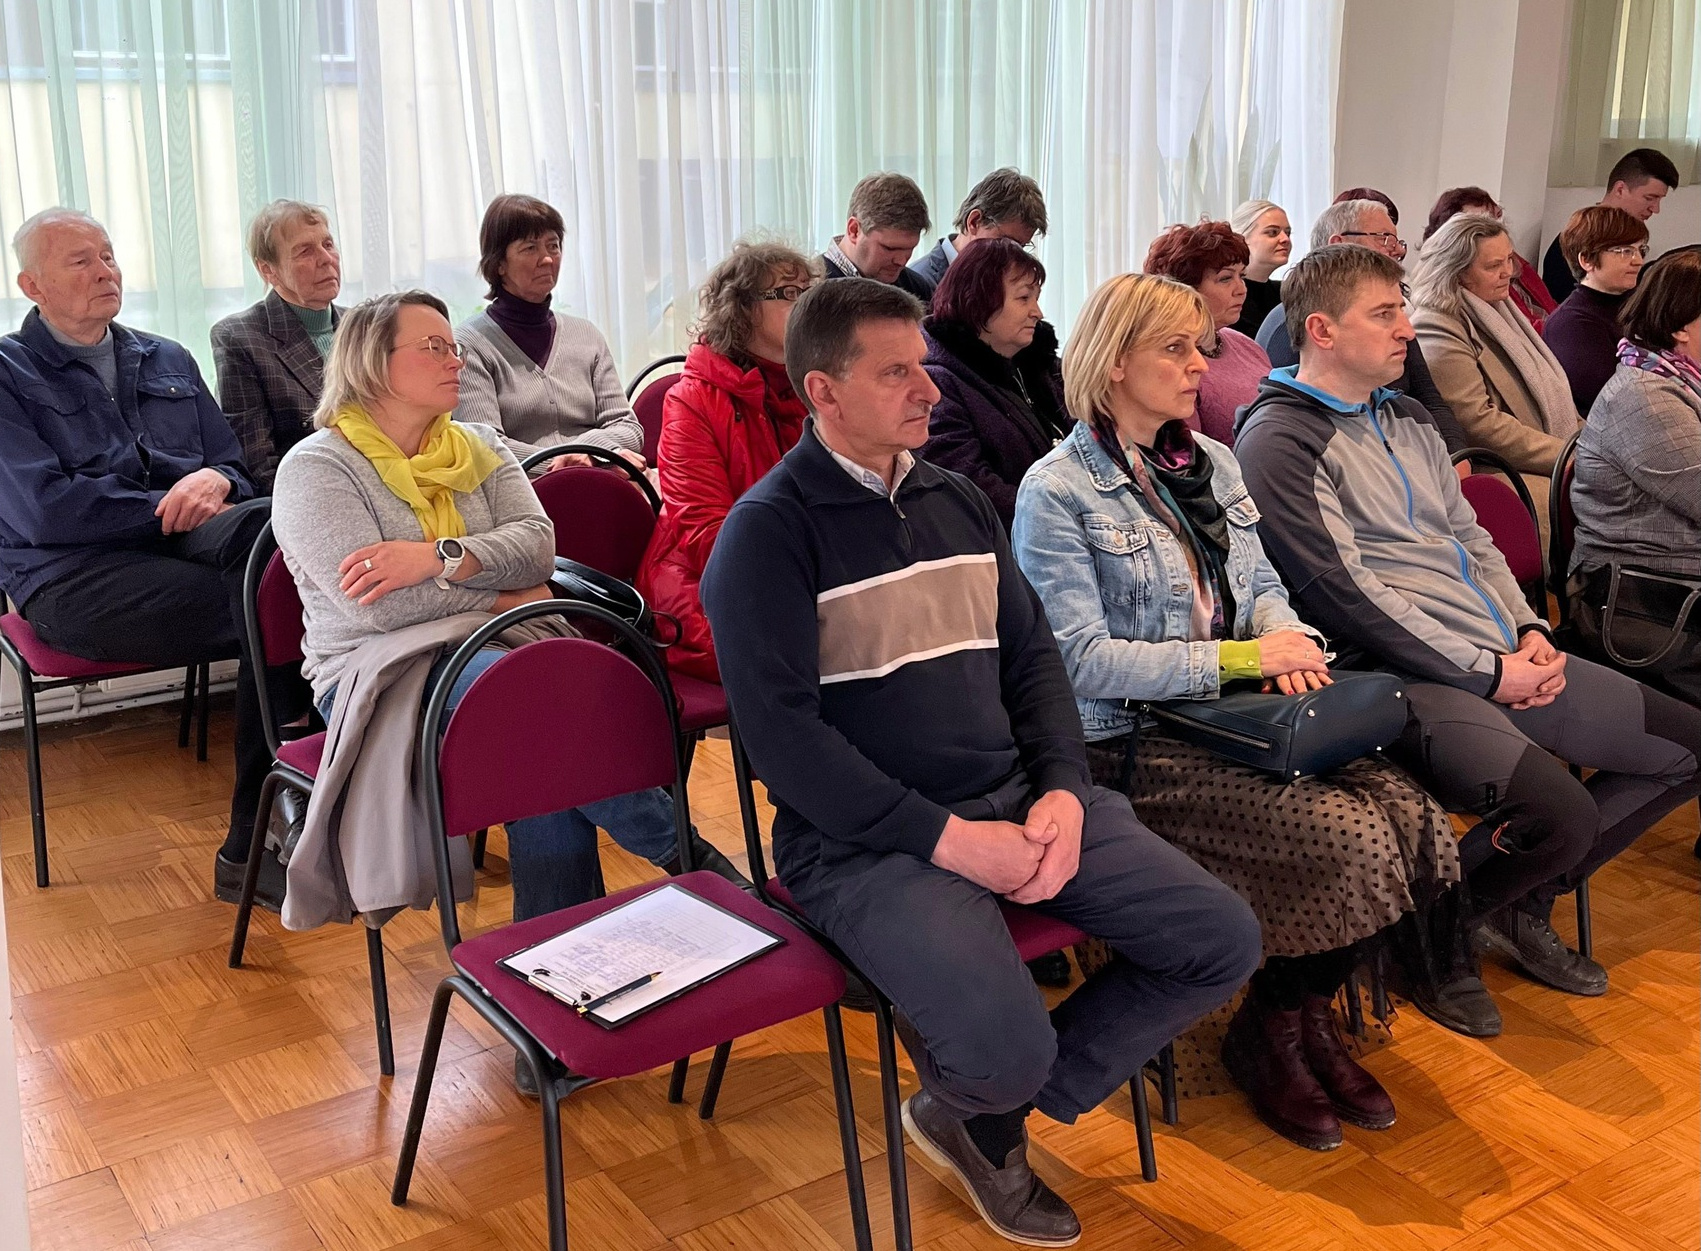 Vīpē aizvadīta iedzīvotāju tikšanās ar Jēkabpils novada domes pārstāvjiem